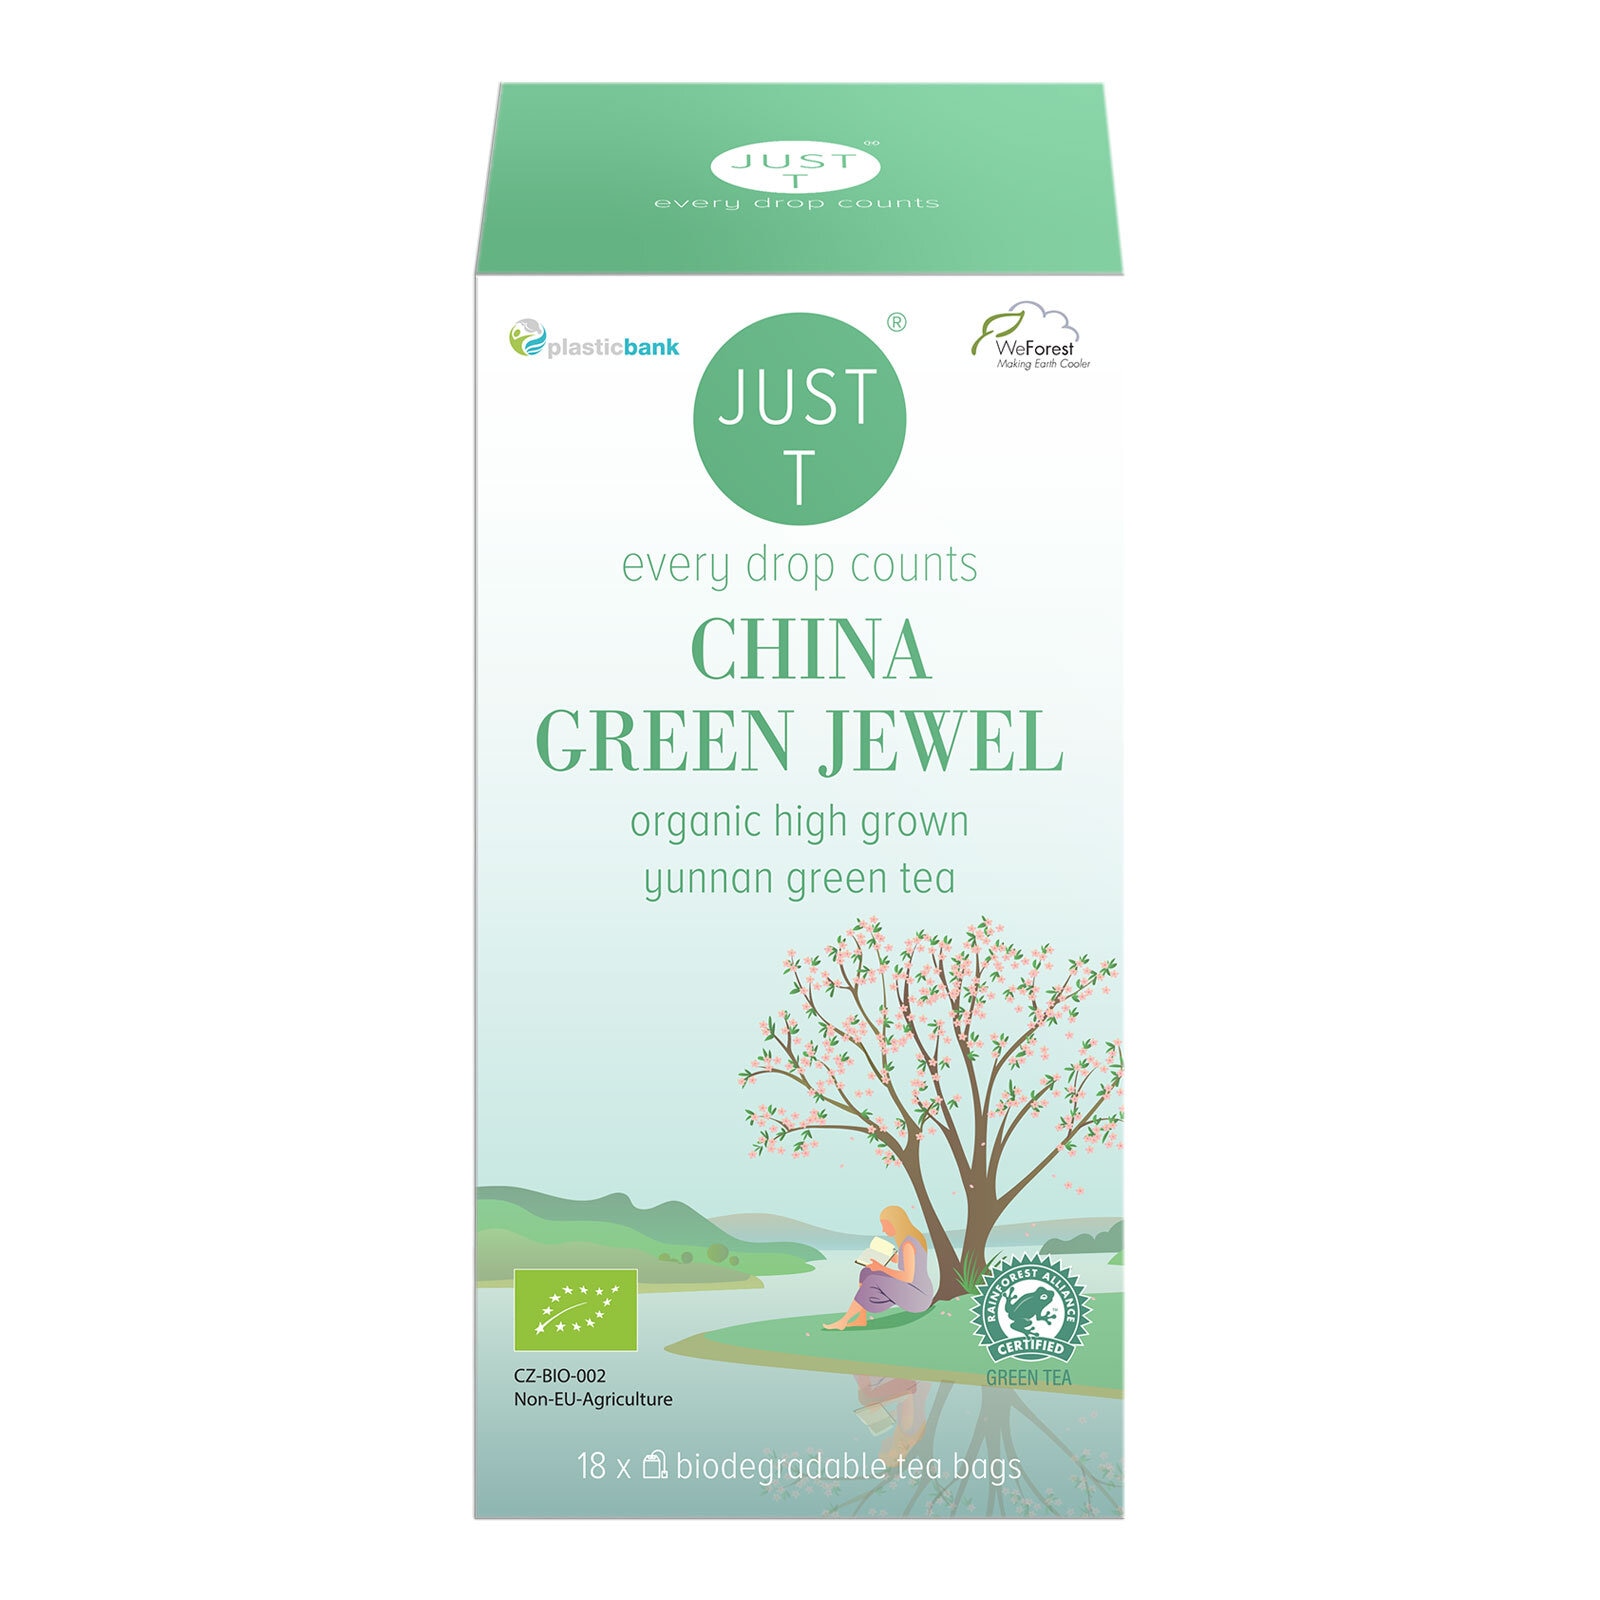 Just T China Green Jewel